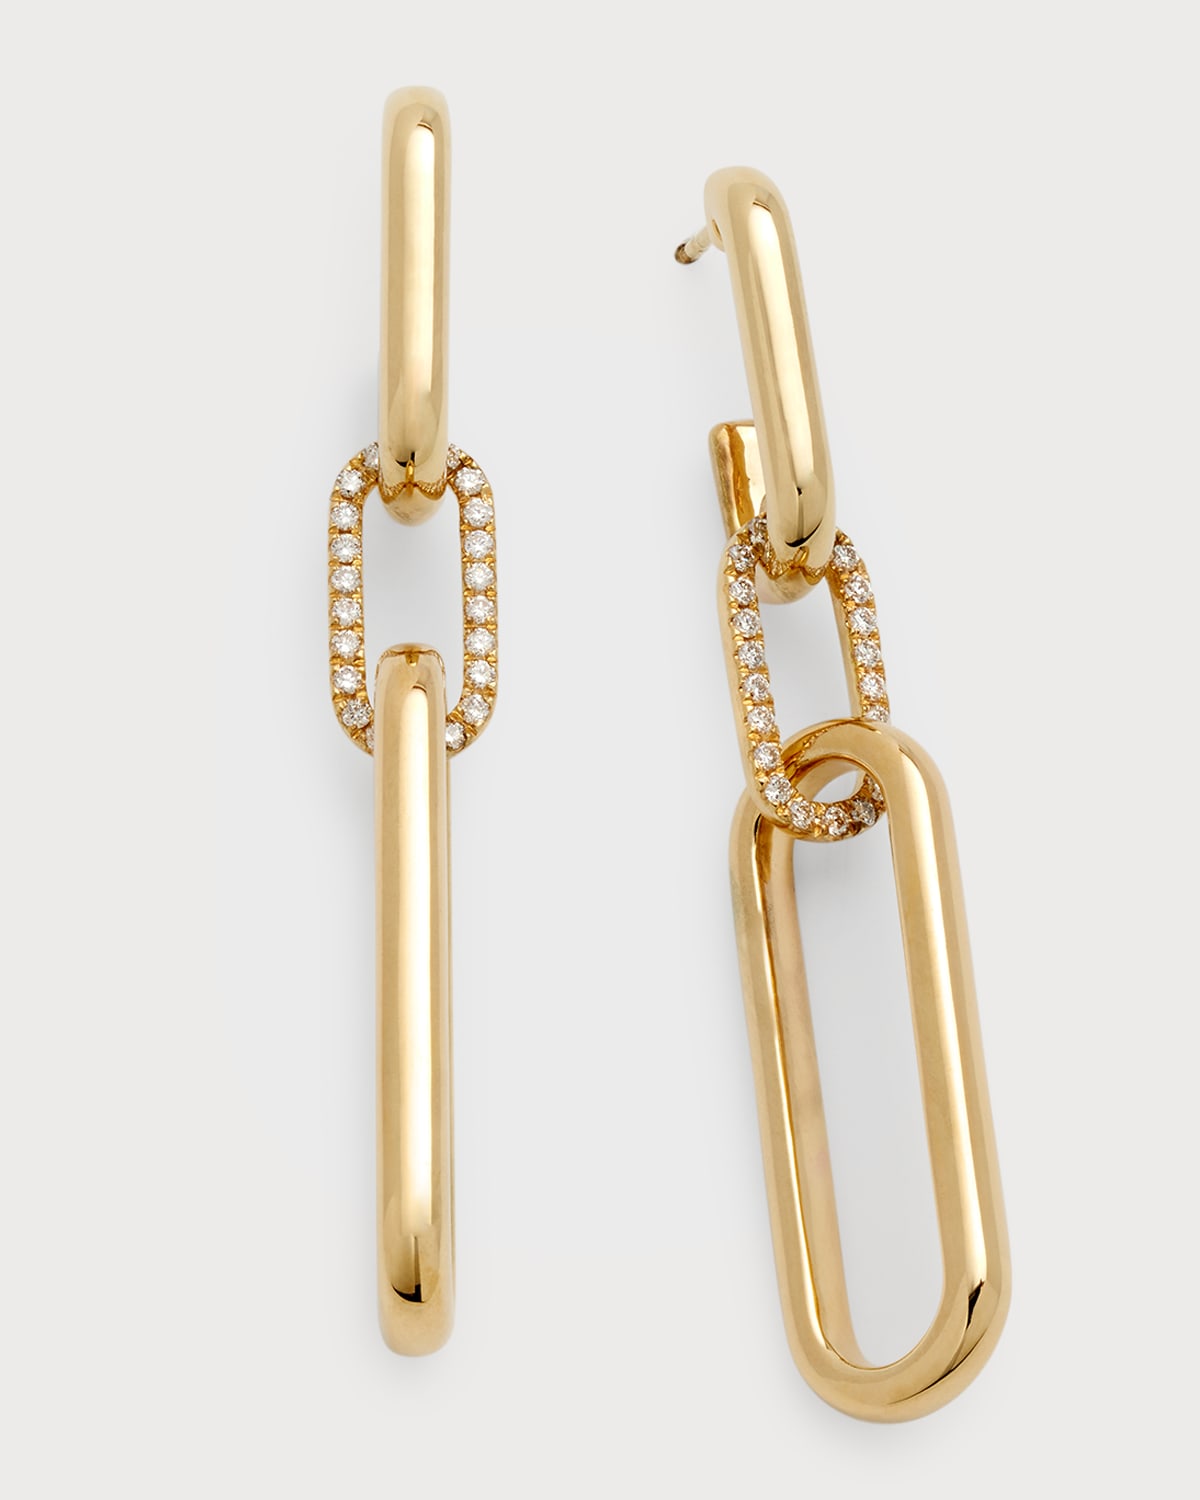 Siena Lasker 14k Yellow Gold Paper Clip Diamond Link Earrings